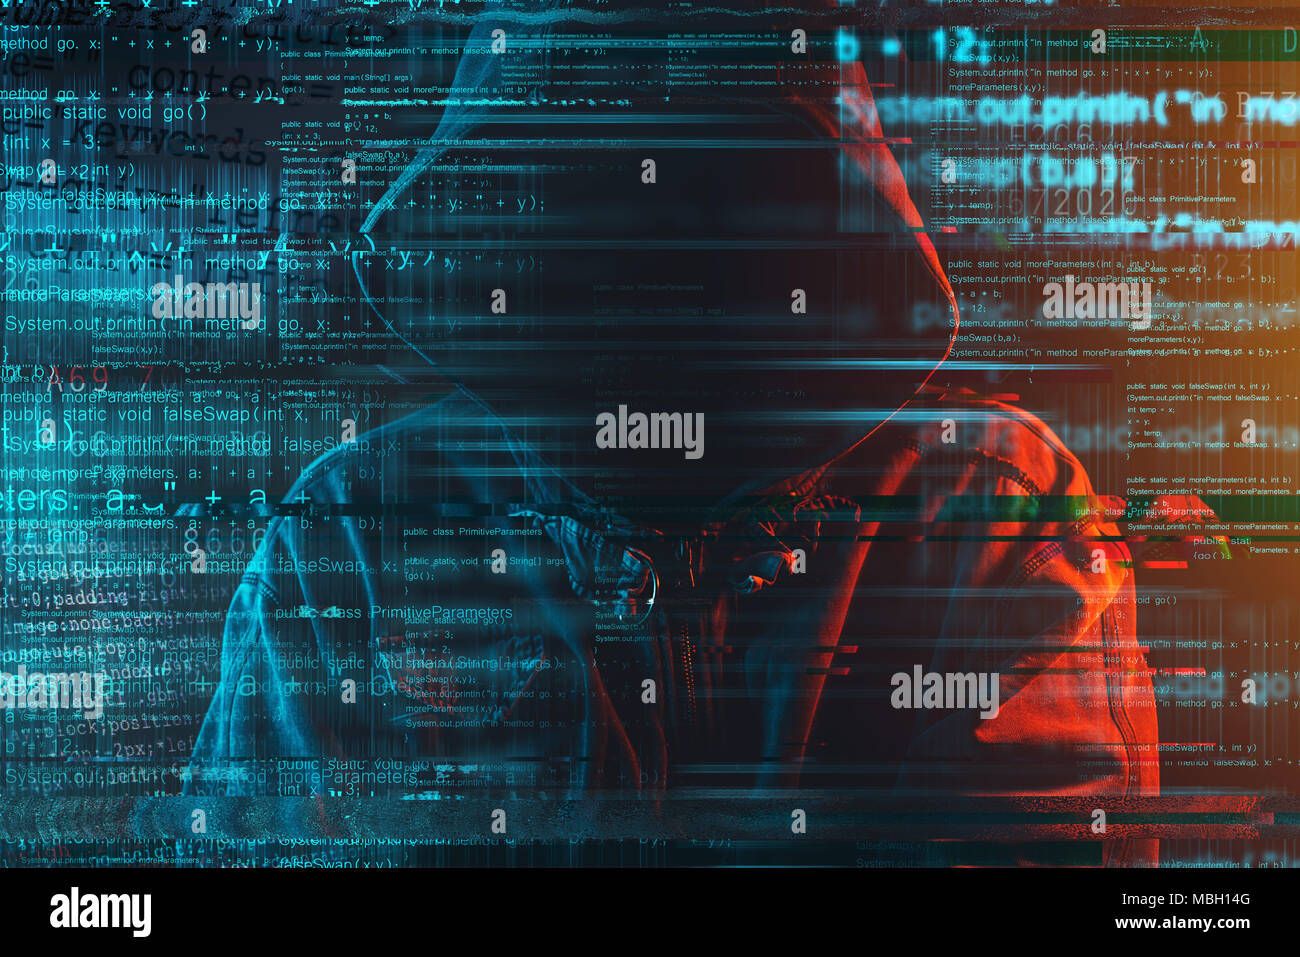 Stereotypische Bild von computer Hacker mit Kapuze und Computer Code. Gesichtslosen hooded männliche Person mit roten und blauen Licht beleuchtet, konzeptionelle Low Key Stockfoto